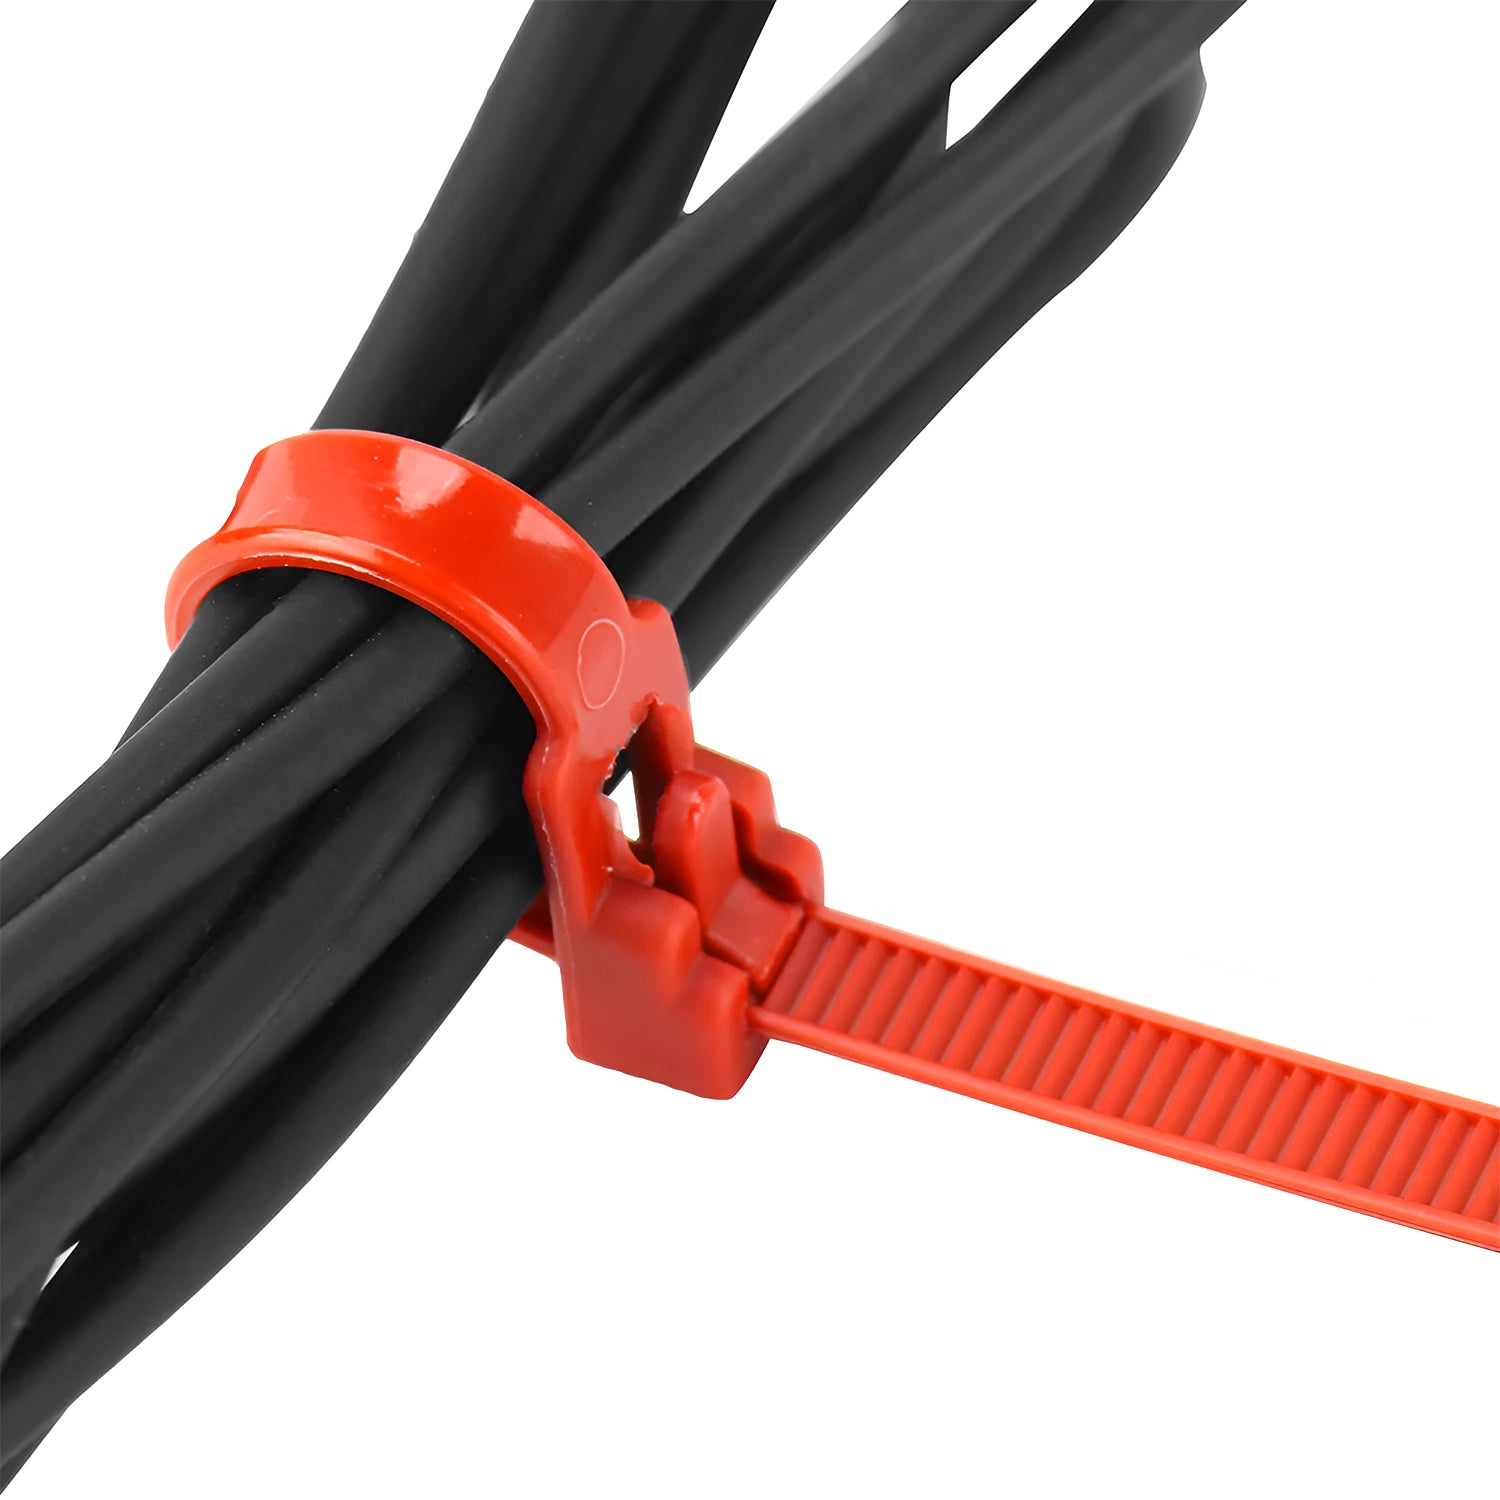 Zip Ties Releasable Heavy Duty Reusable Cable Ties Wraps 